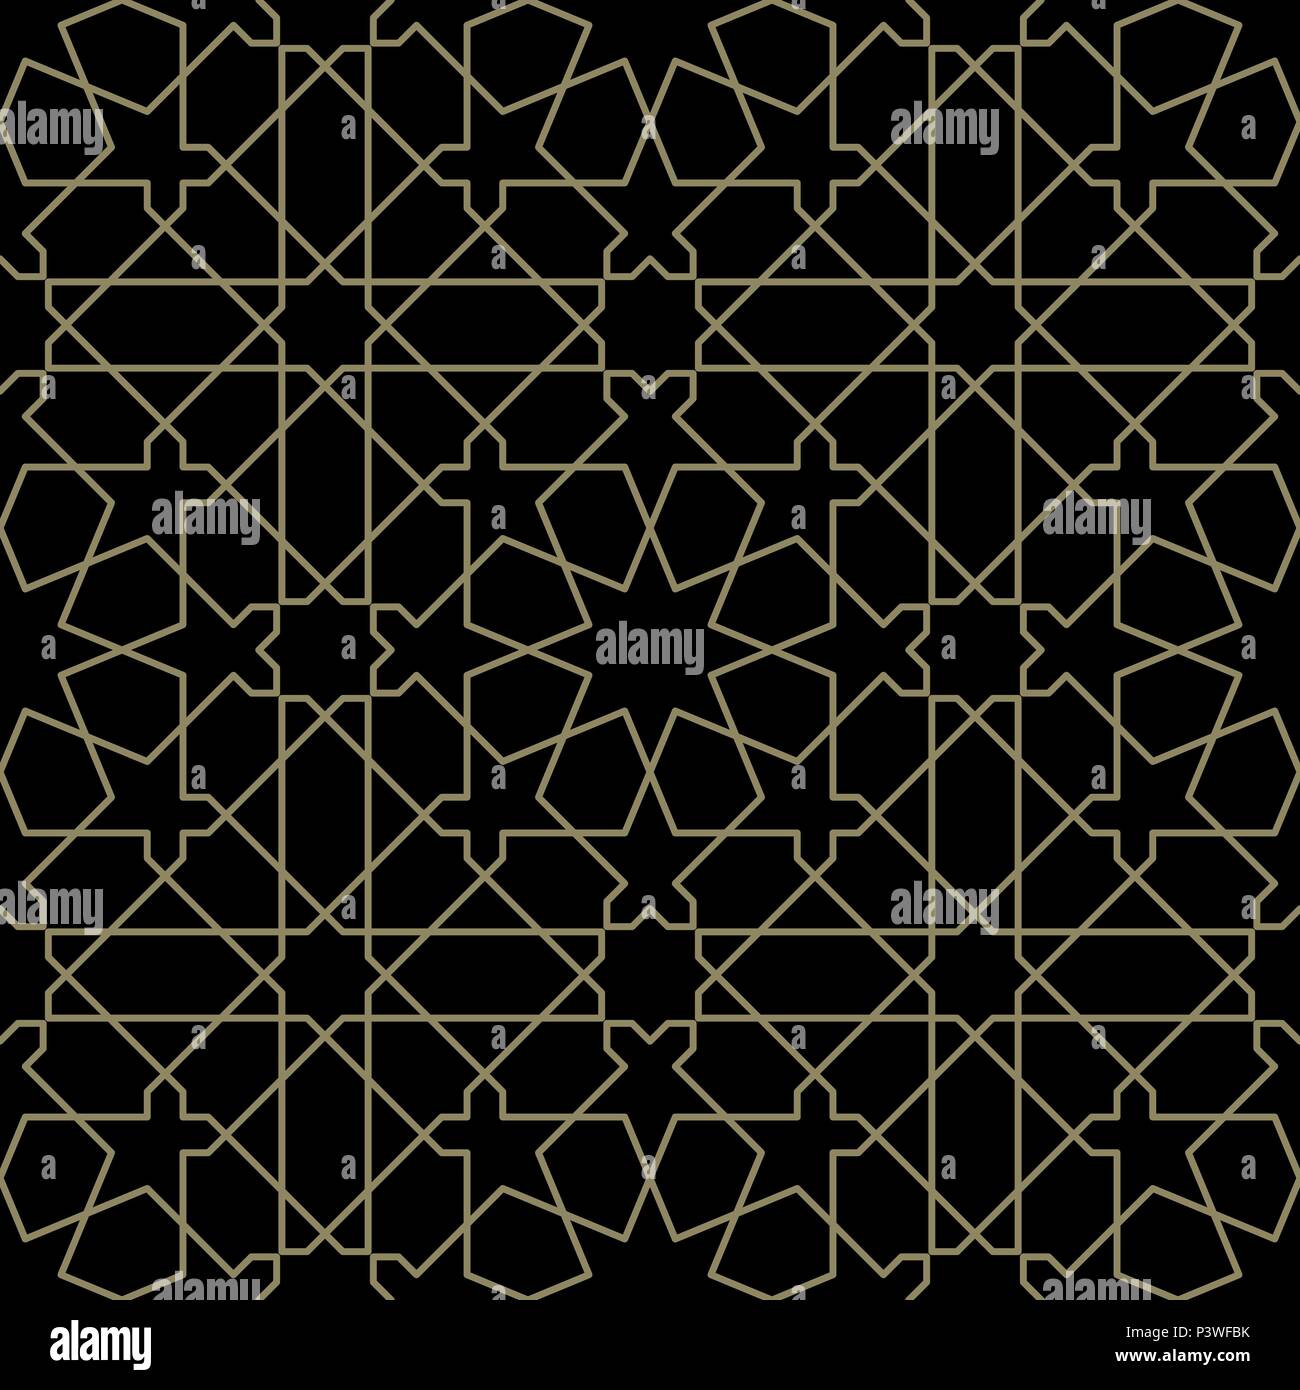 Arabesque geometrischer Vektor nahtlose Muster im arabischen Stil. Dieses luxuriöse abstrakte kachelbare Muster ist ideal für die kreative Gestaltung Projekt, Hintergrund Stock Vektor